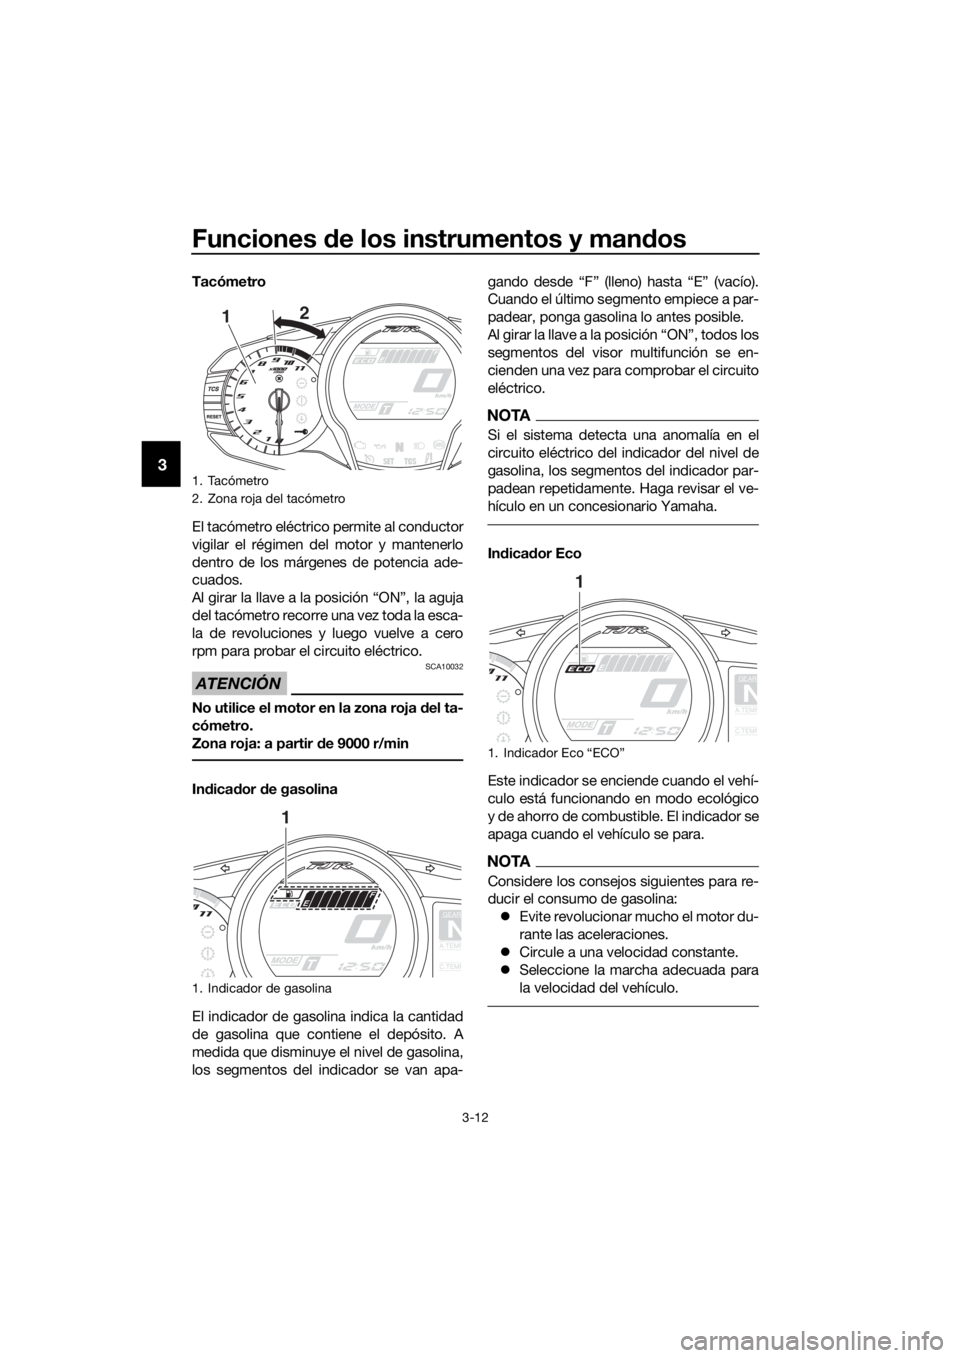 YAMAHA FJR1300AS 2018  Manuale de Empleo (in Spanish) Funciones de los instrumentos y man dos
3-12
3
Tacómetro
El tacómetro eléctrico permite al conductor
vigilar el régimen del motor y mantenerlo
dentro de los márgenes de potencia ade-
cuados.
Al g